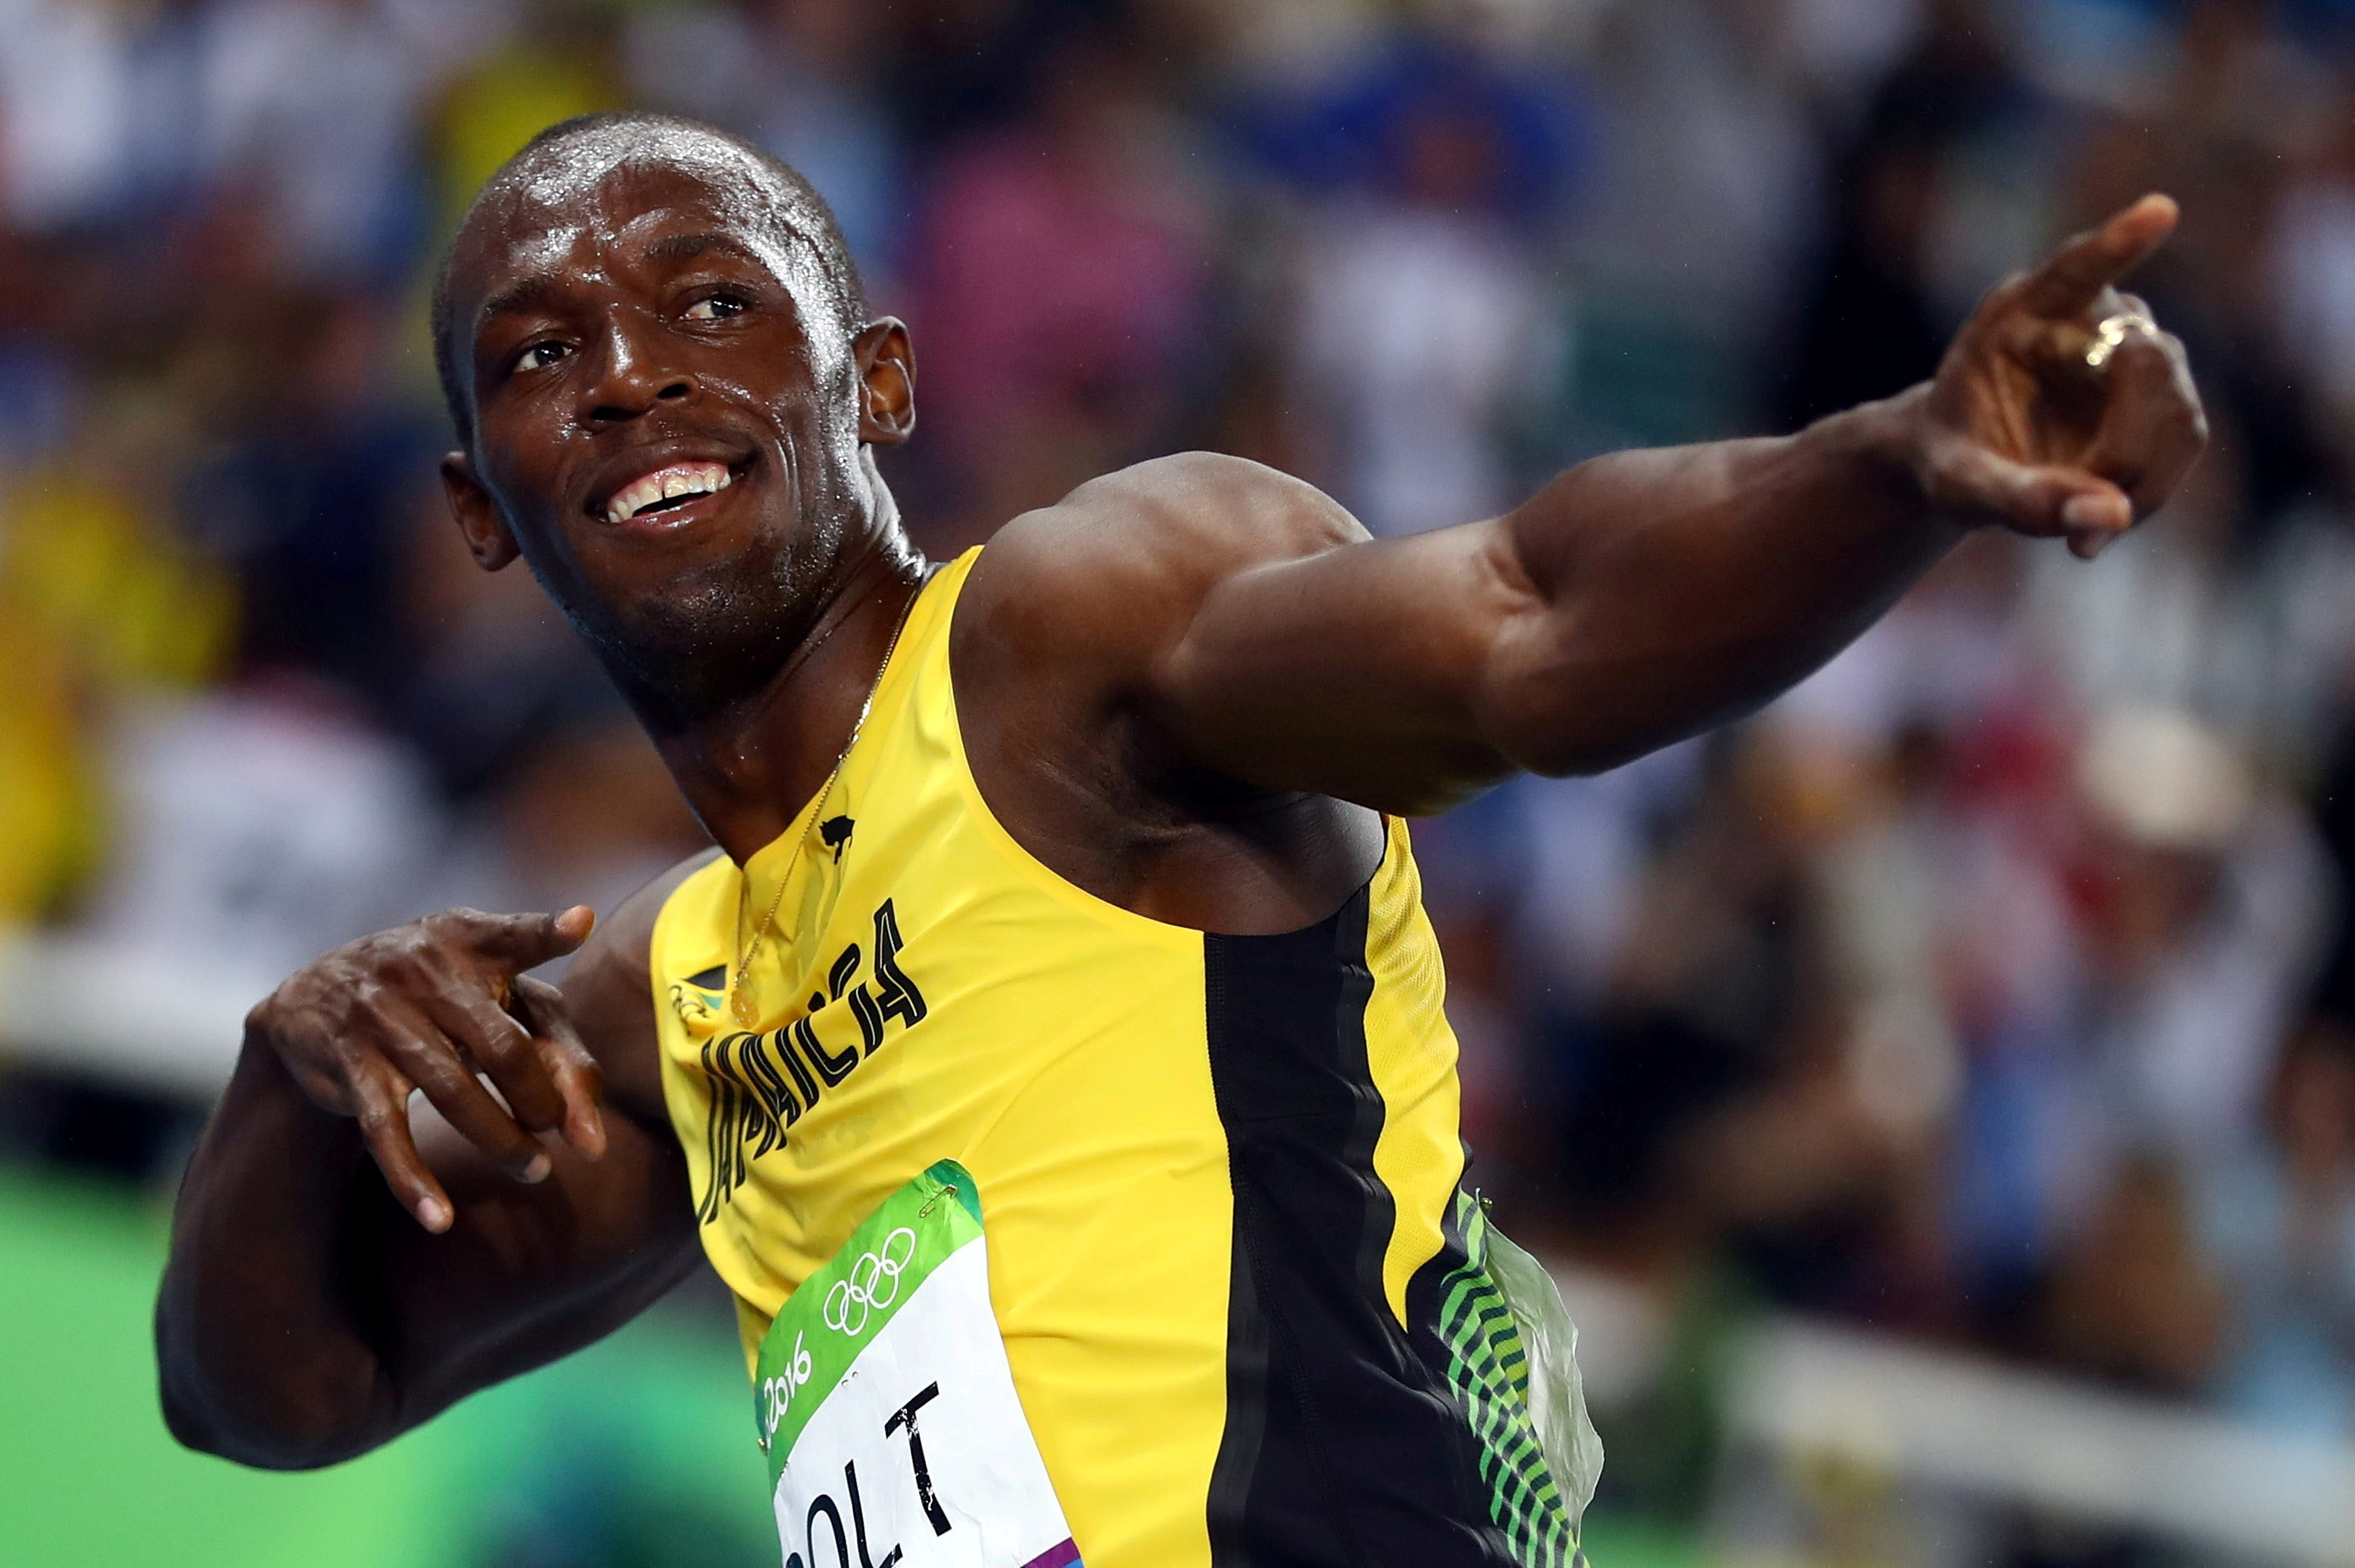 Bolt ostenta el récord Mundial en 100 y 200 metros con tiempos de apenas 9,58 segundos y 19,19 segundos, respectivamente, ambos establecidos en 2009 (Reuters)